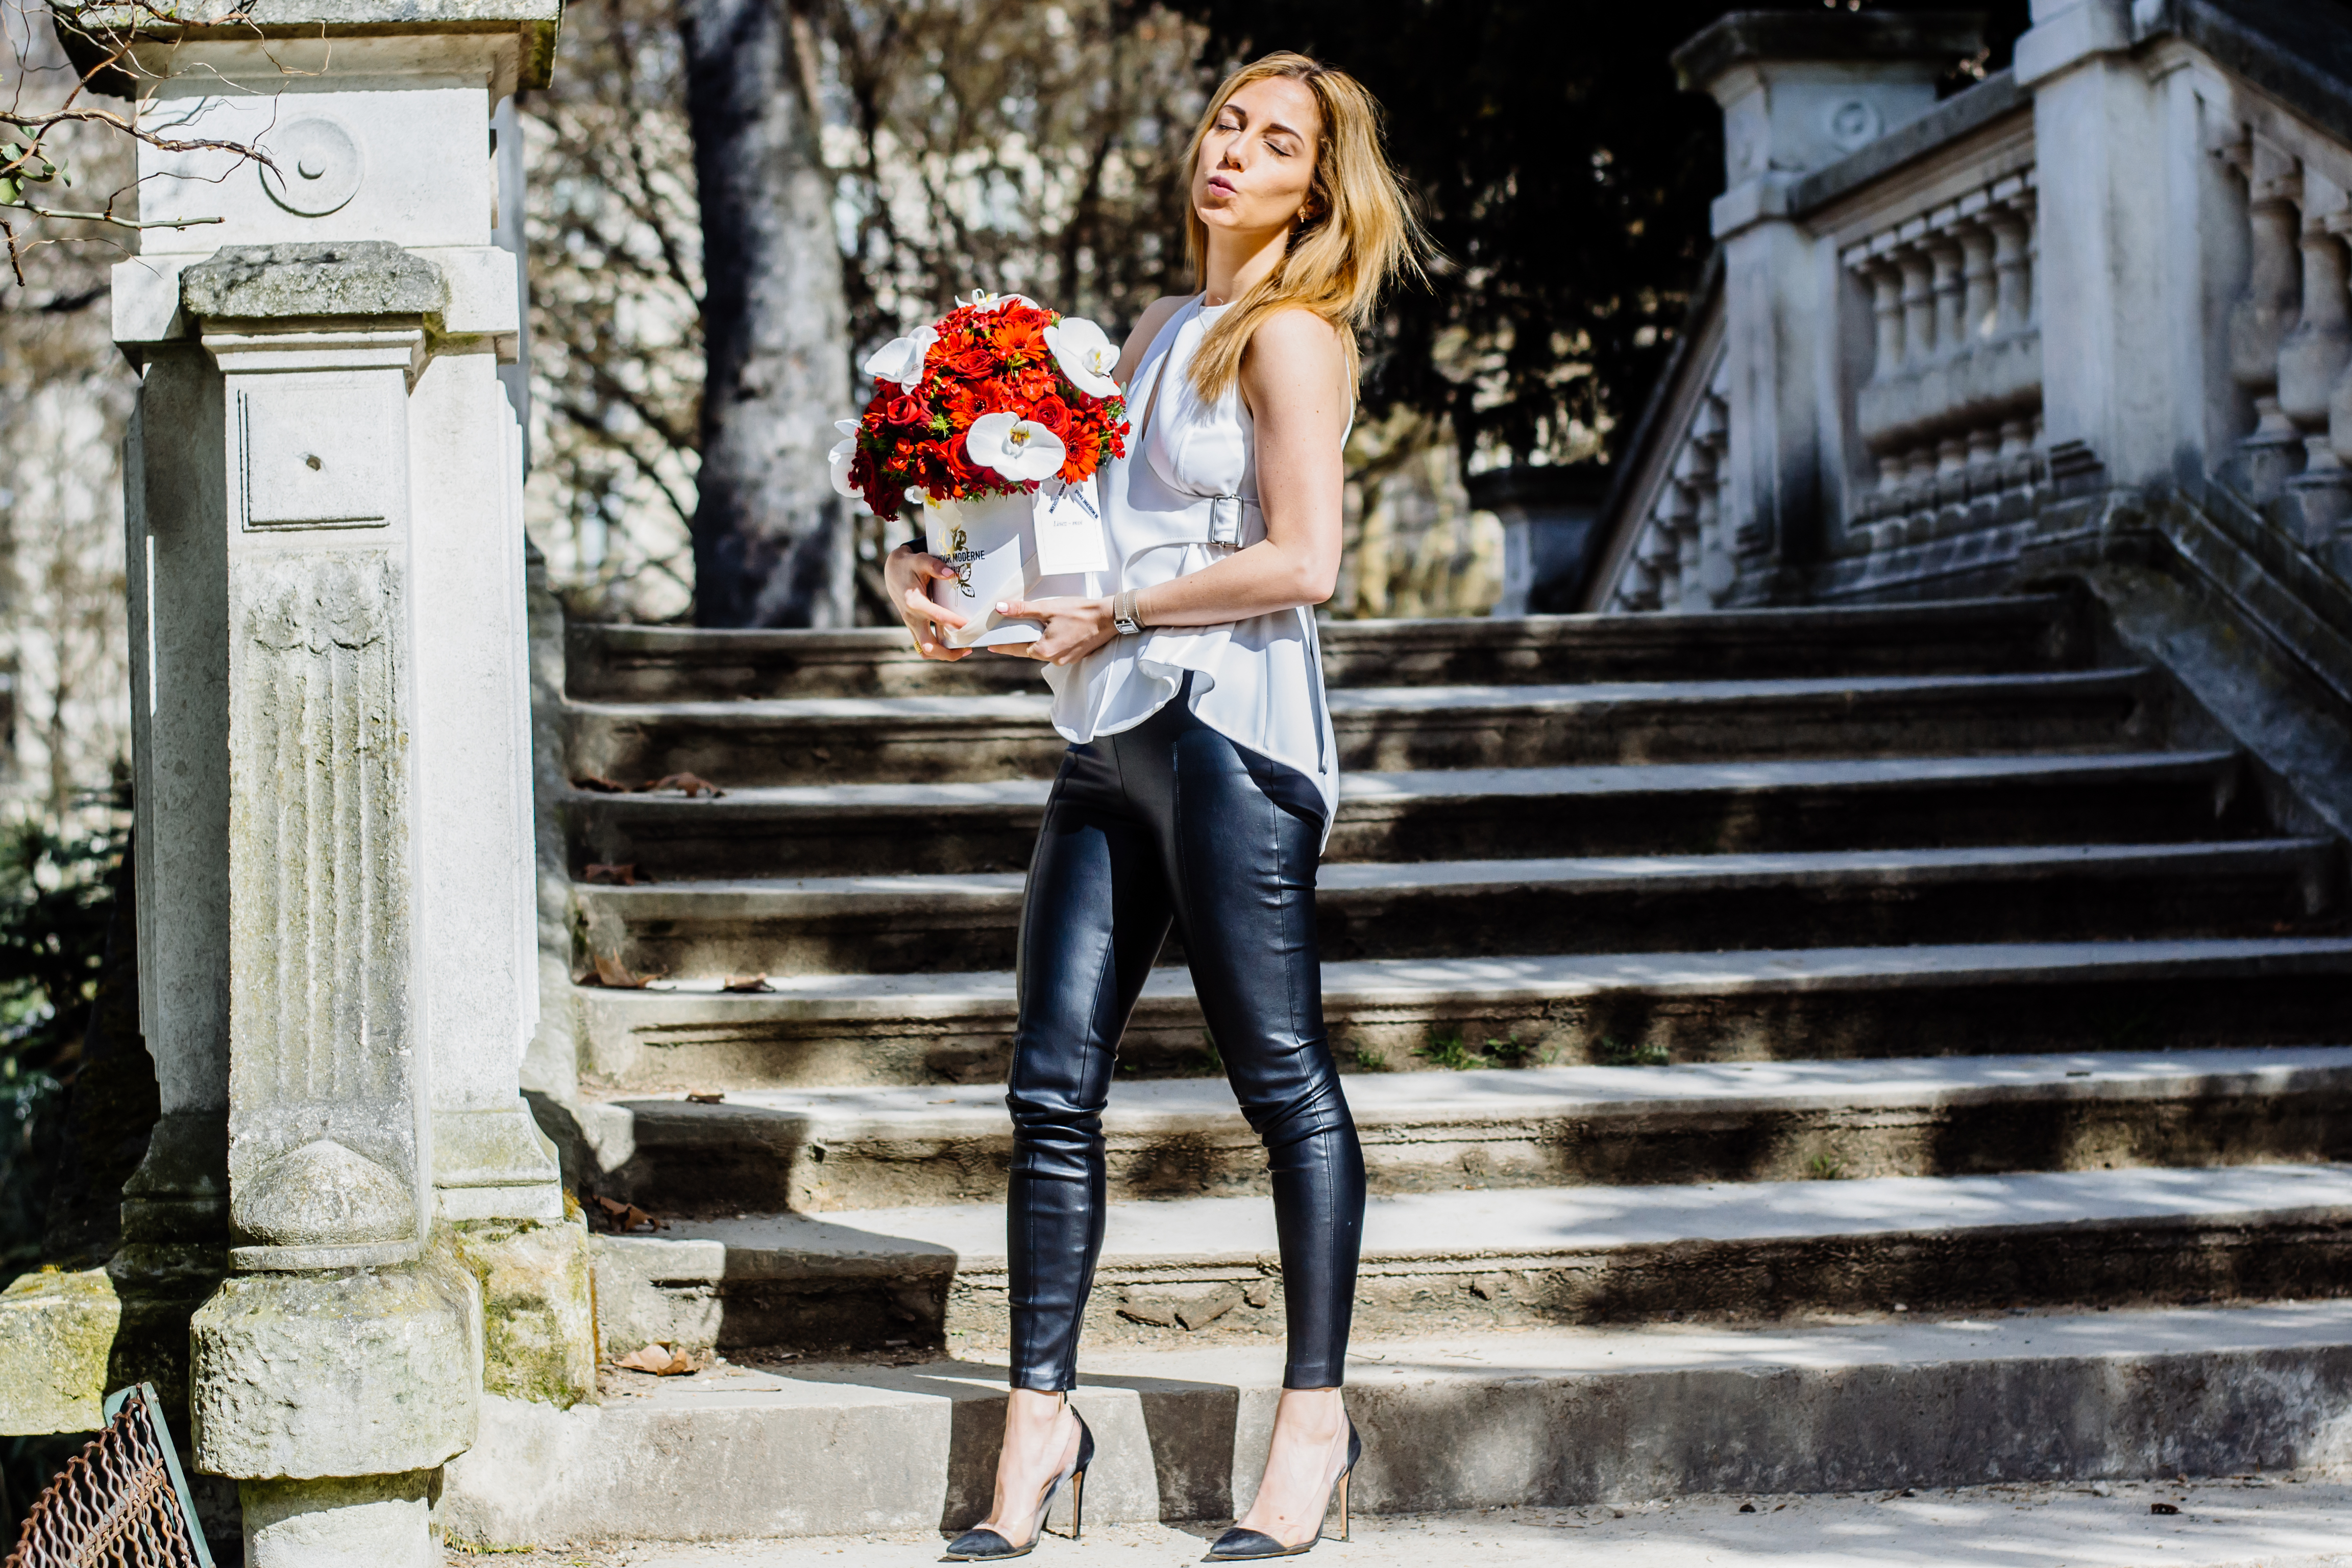 L'amour moderne, fleurs, rose, roses, bouquet, paris, blog, blogger, lifestyle, Russel Cador